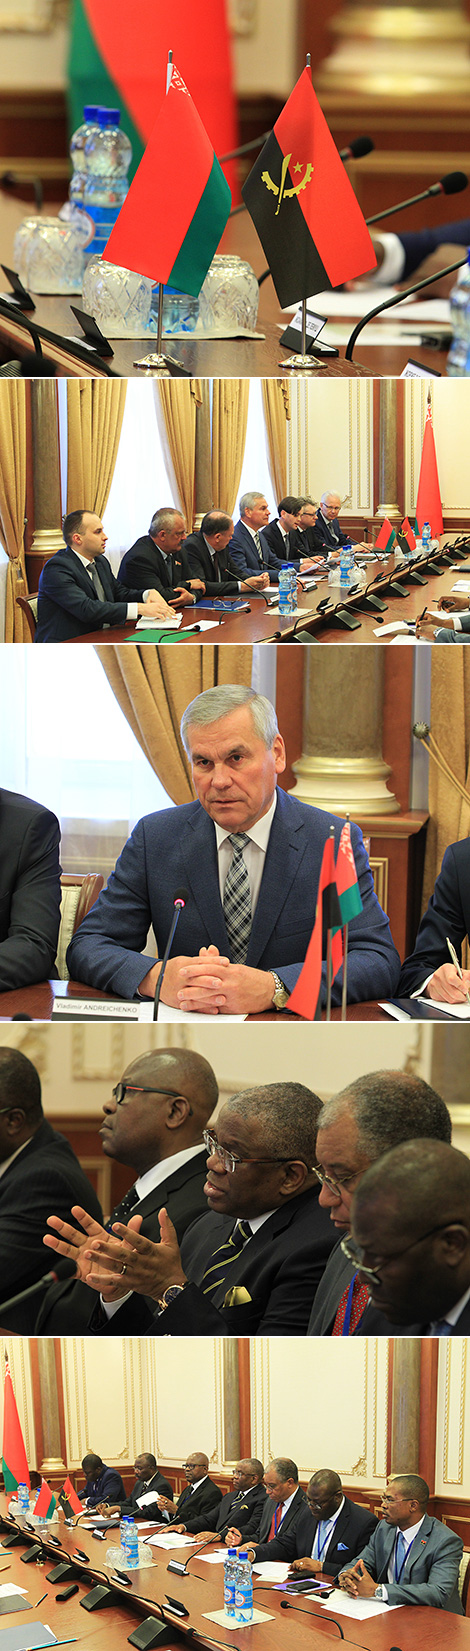 Председатель Палаты представителей Владимир Андрейченко встретился с министром иностранных дел Анголы Жоржем Ребелу Шикоти